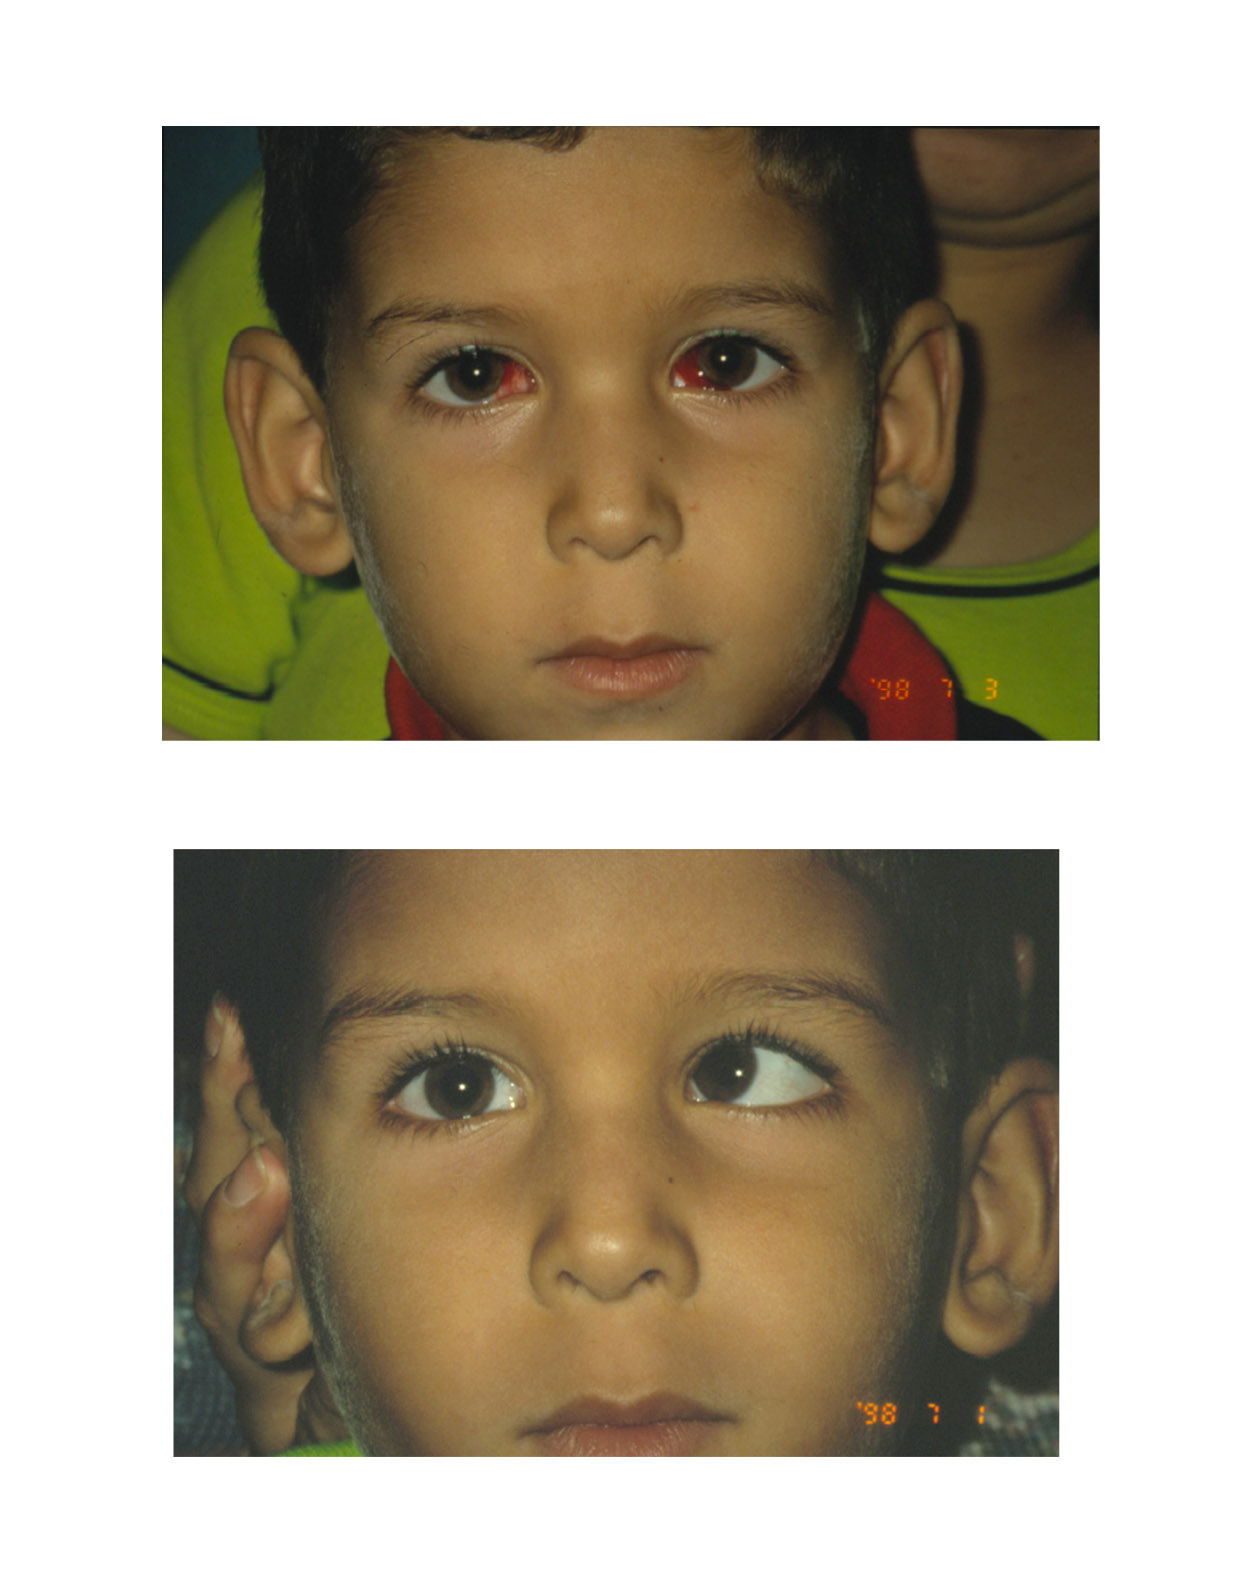 Niño con Estrabismo - Imágenes de antes y después del tratamiento - Oftalmología pediátrica - Dr. Alvaro Sanabria